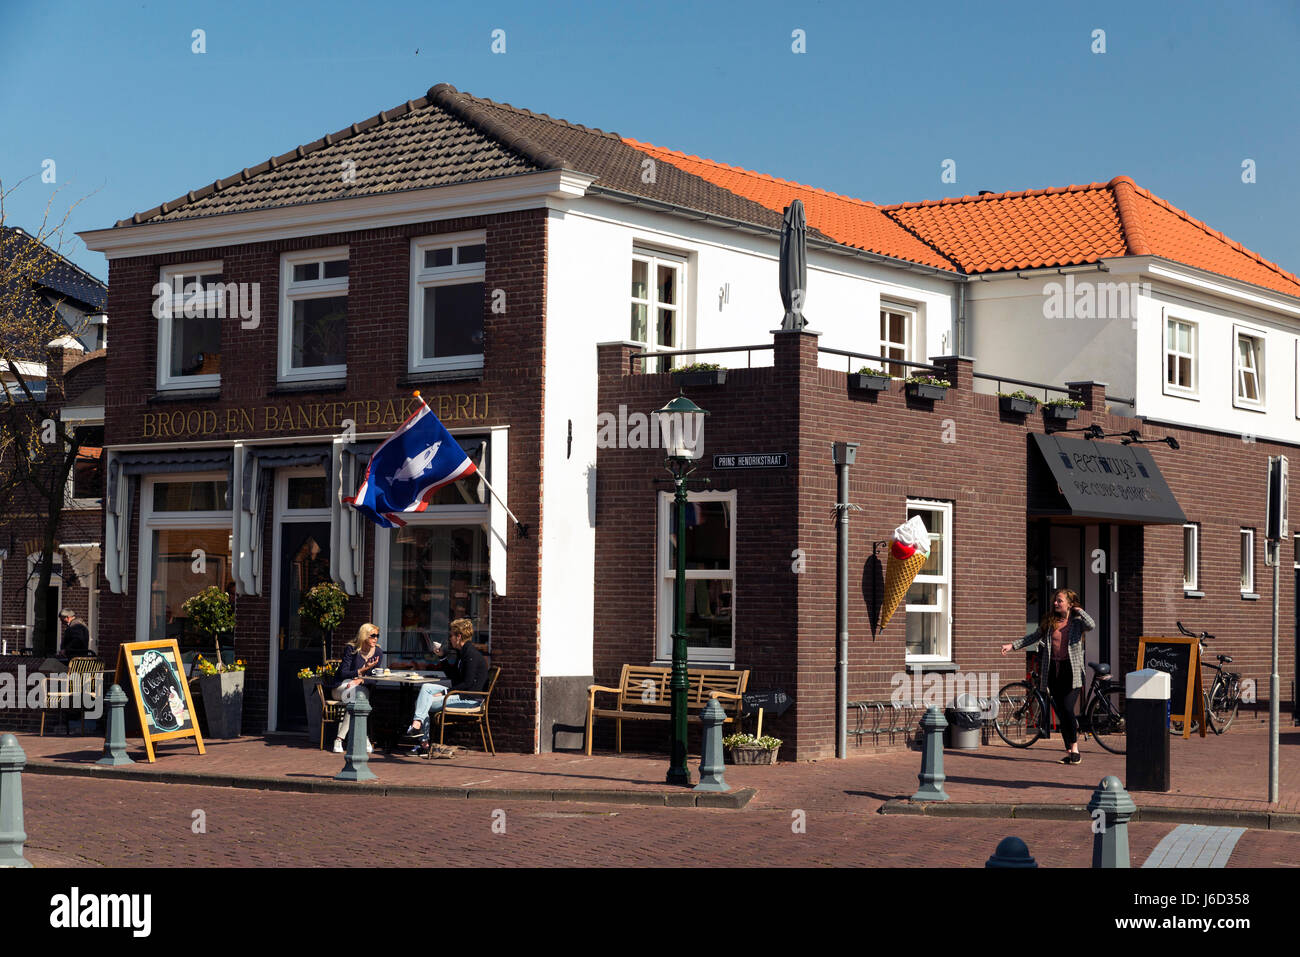 URK, Holanda - Mayo 11, 2017: Urk es un municipio de la provincia de Flevoland, en los Países Bajos. Urk fue anu isla del Zuider Zee hasta su cierre Foto de stock